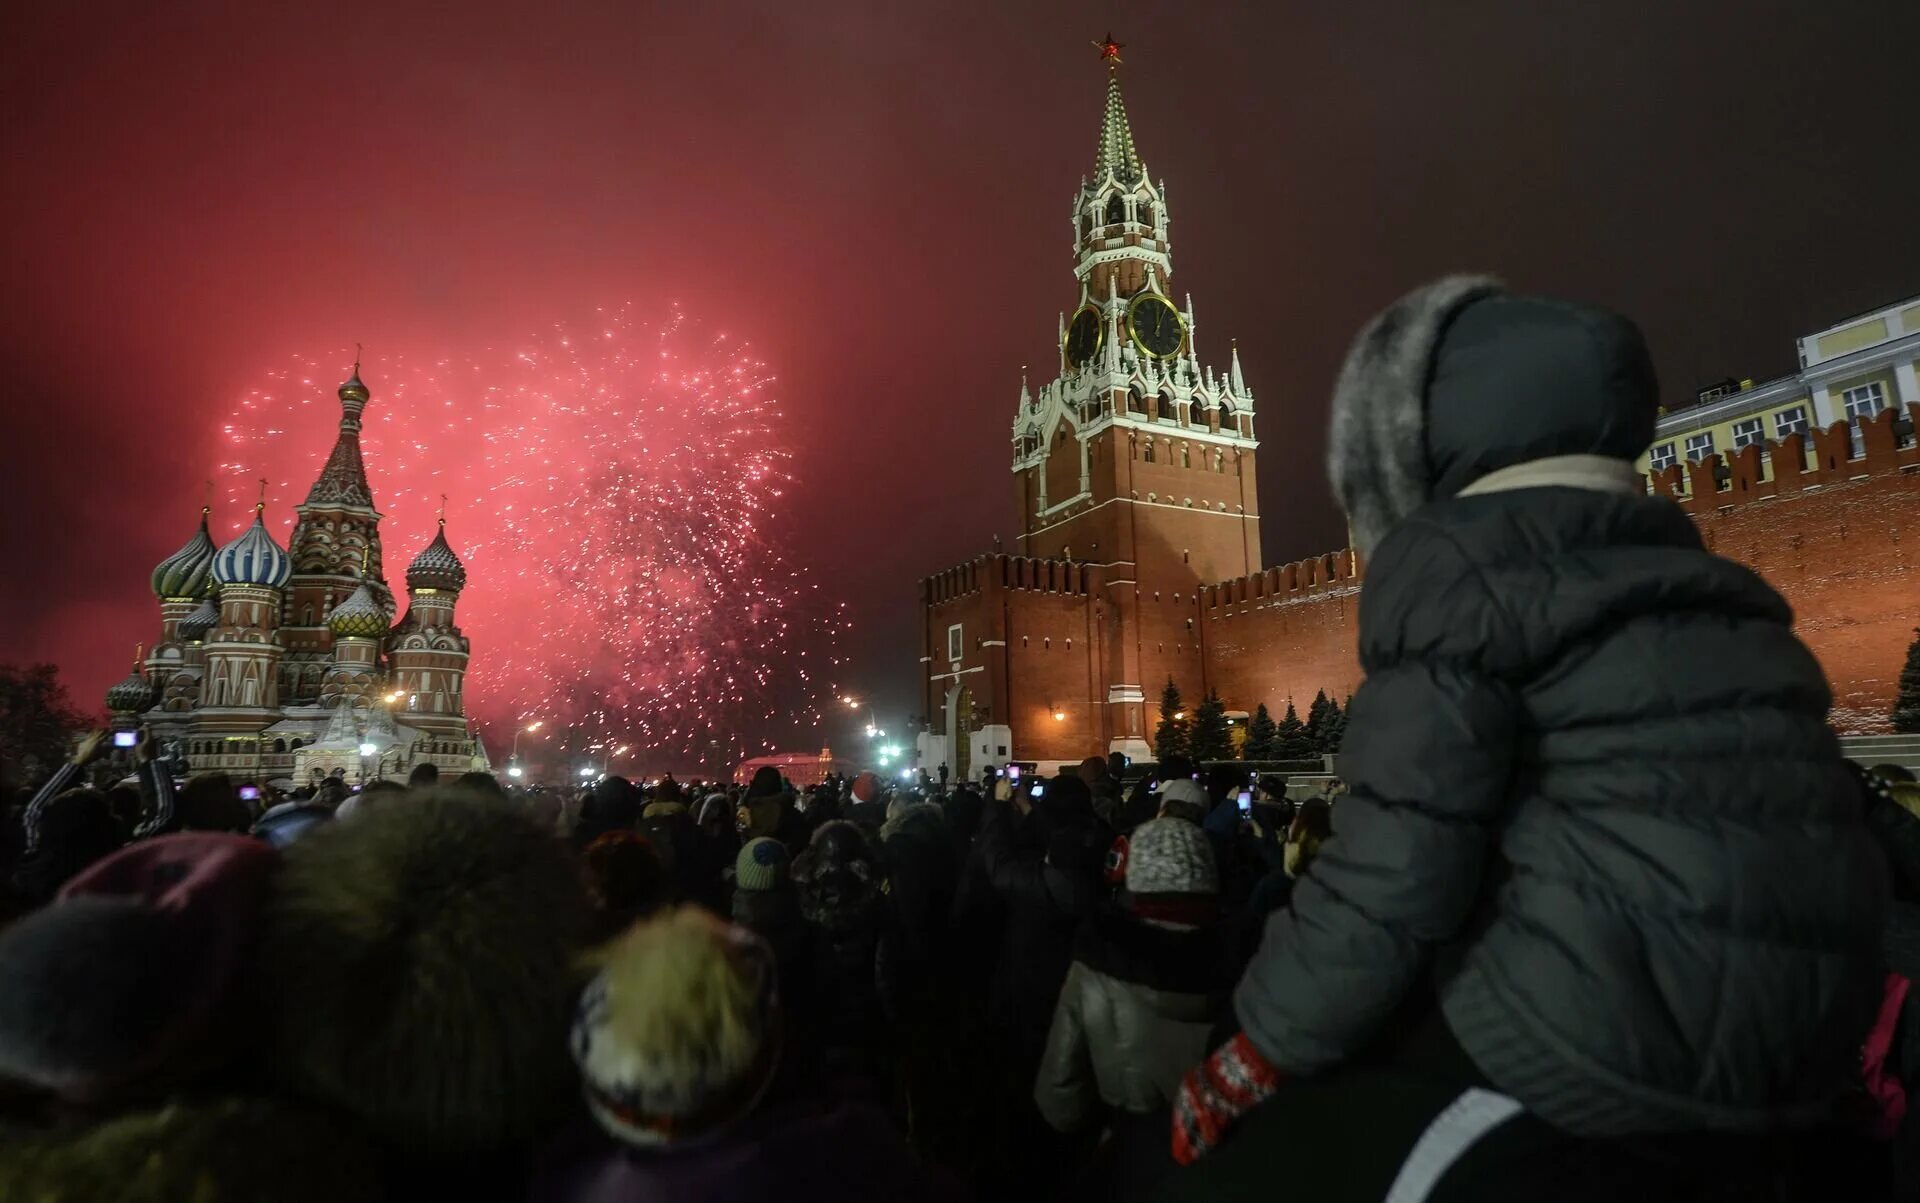 Провести новый год в россии. Новый год в России. Новый год в России красная площадь. Люди на площади в новый год. Люди на красной площади в новый год.